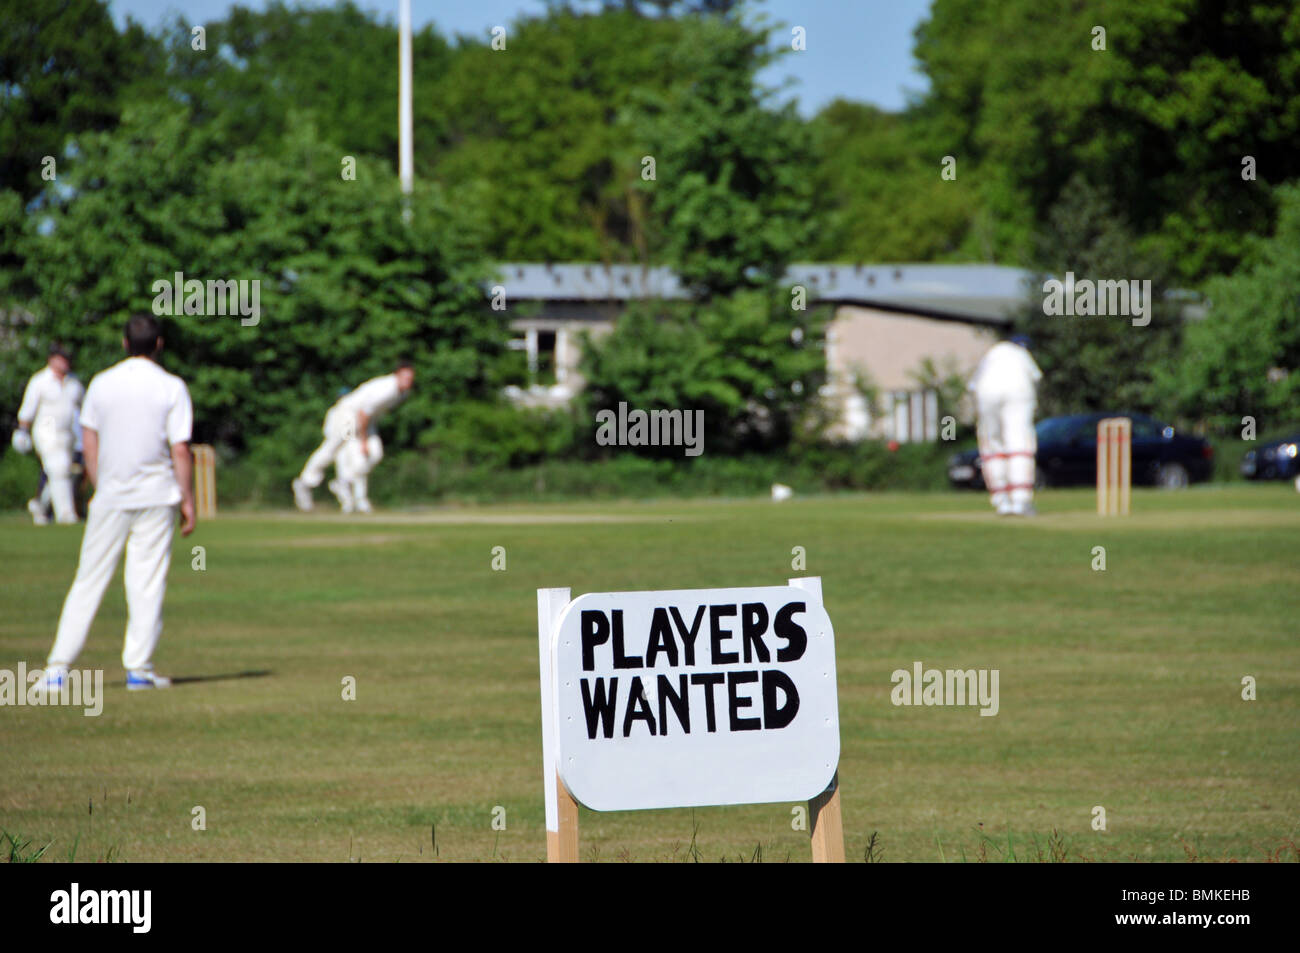 Village vert compétition amatuer match de cricket d'été en cours et signe publicitaire pour les joueurs recherché Navestock Brentwood Essex Angleterre Royaume-Uni Banque D'Images